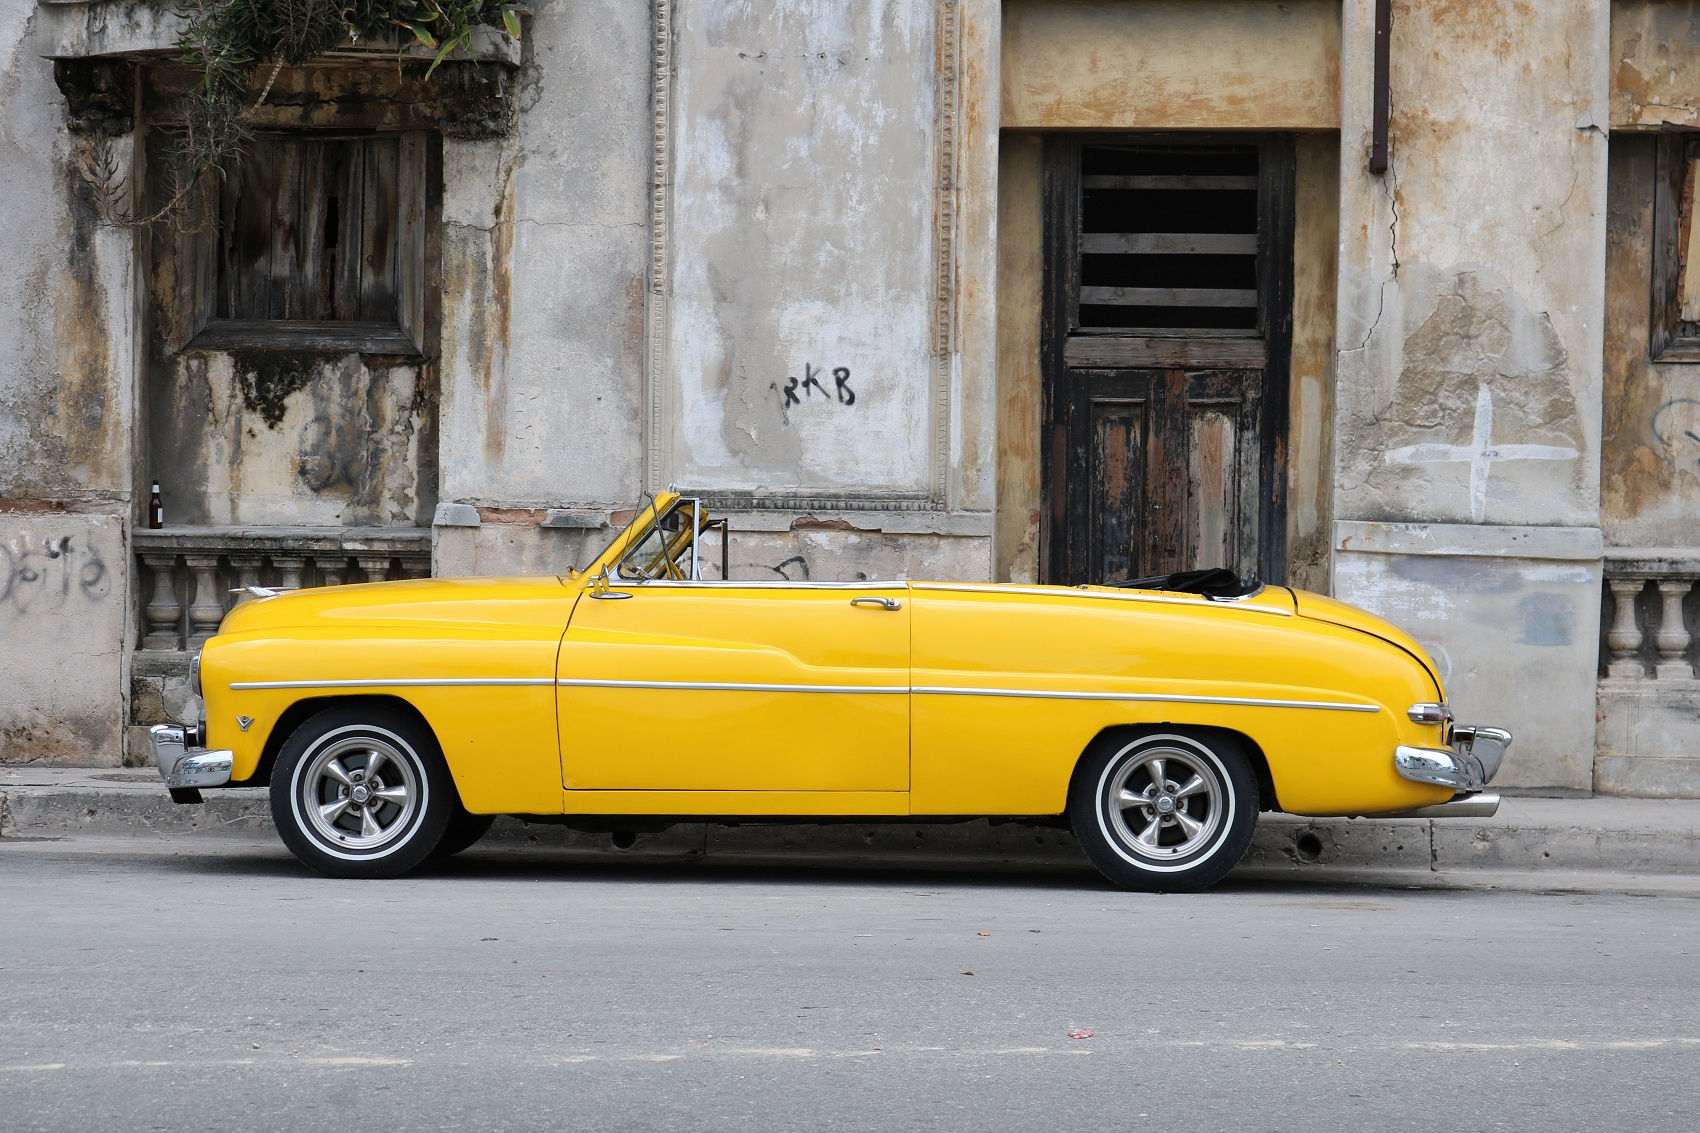 Находките на High View Art: Куба